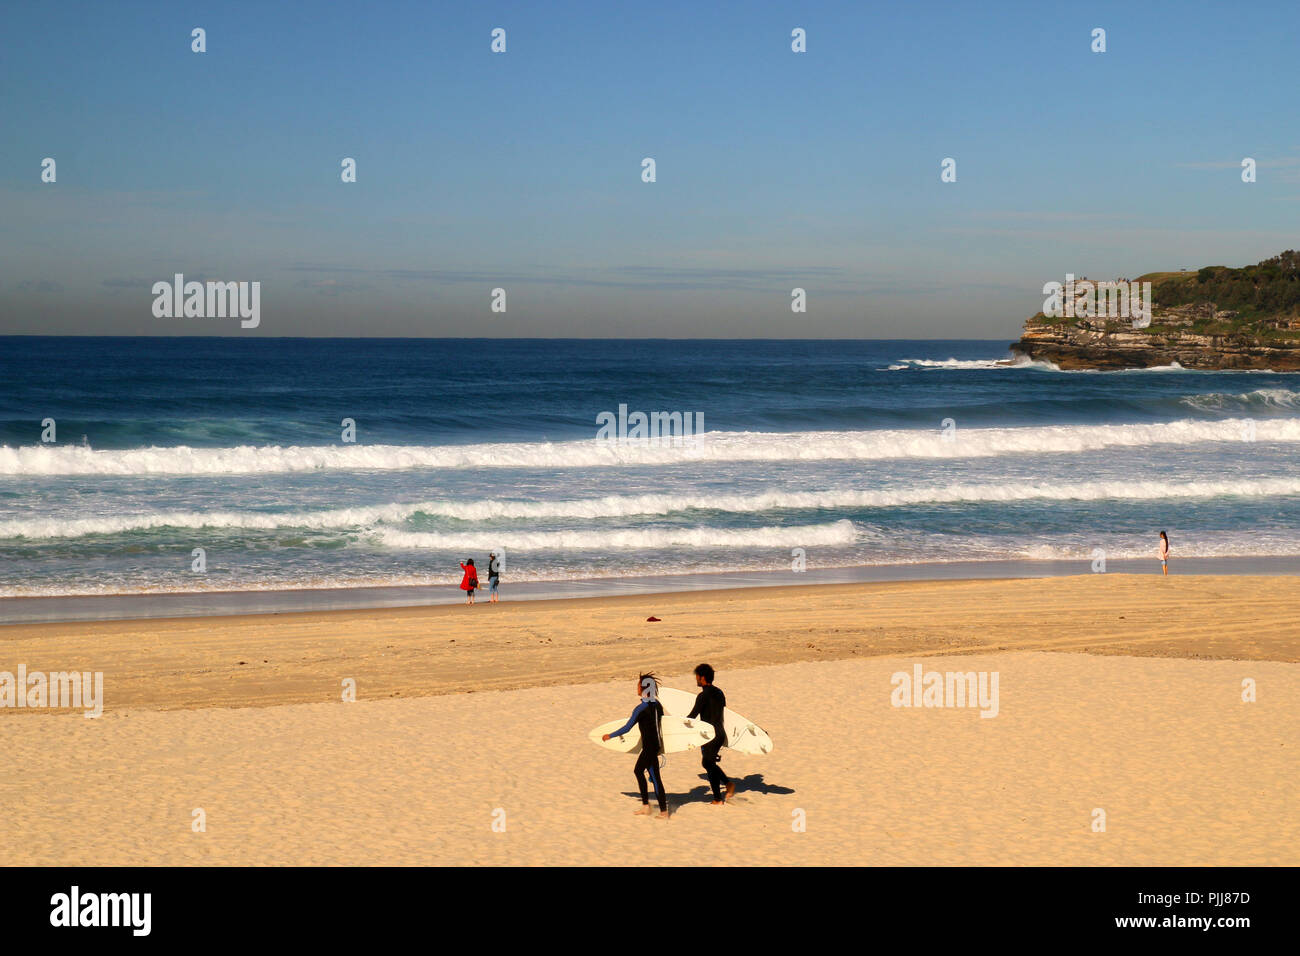 Plage de sable naturel à Sydney, des vagues énormes et deux surfeurs de marcher avec leur surf à l'eau, l'océan Pacifique, la plage de Bondi en Australie Banque D'Images